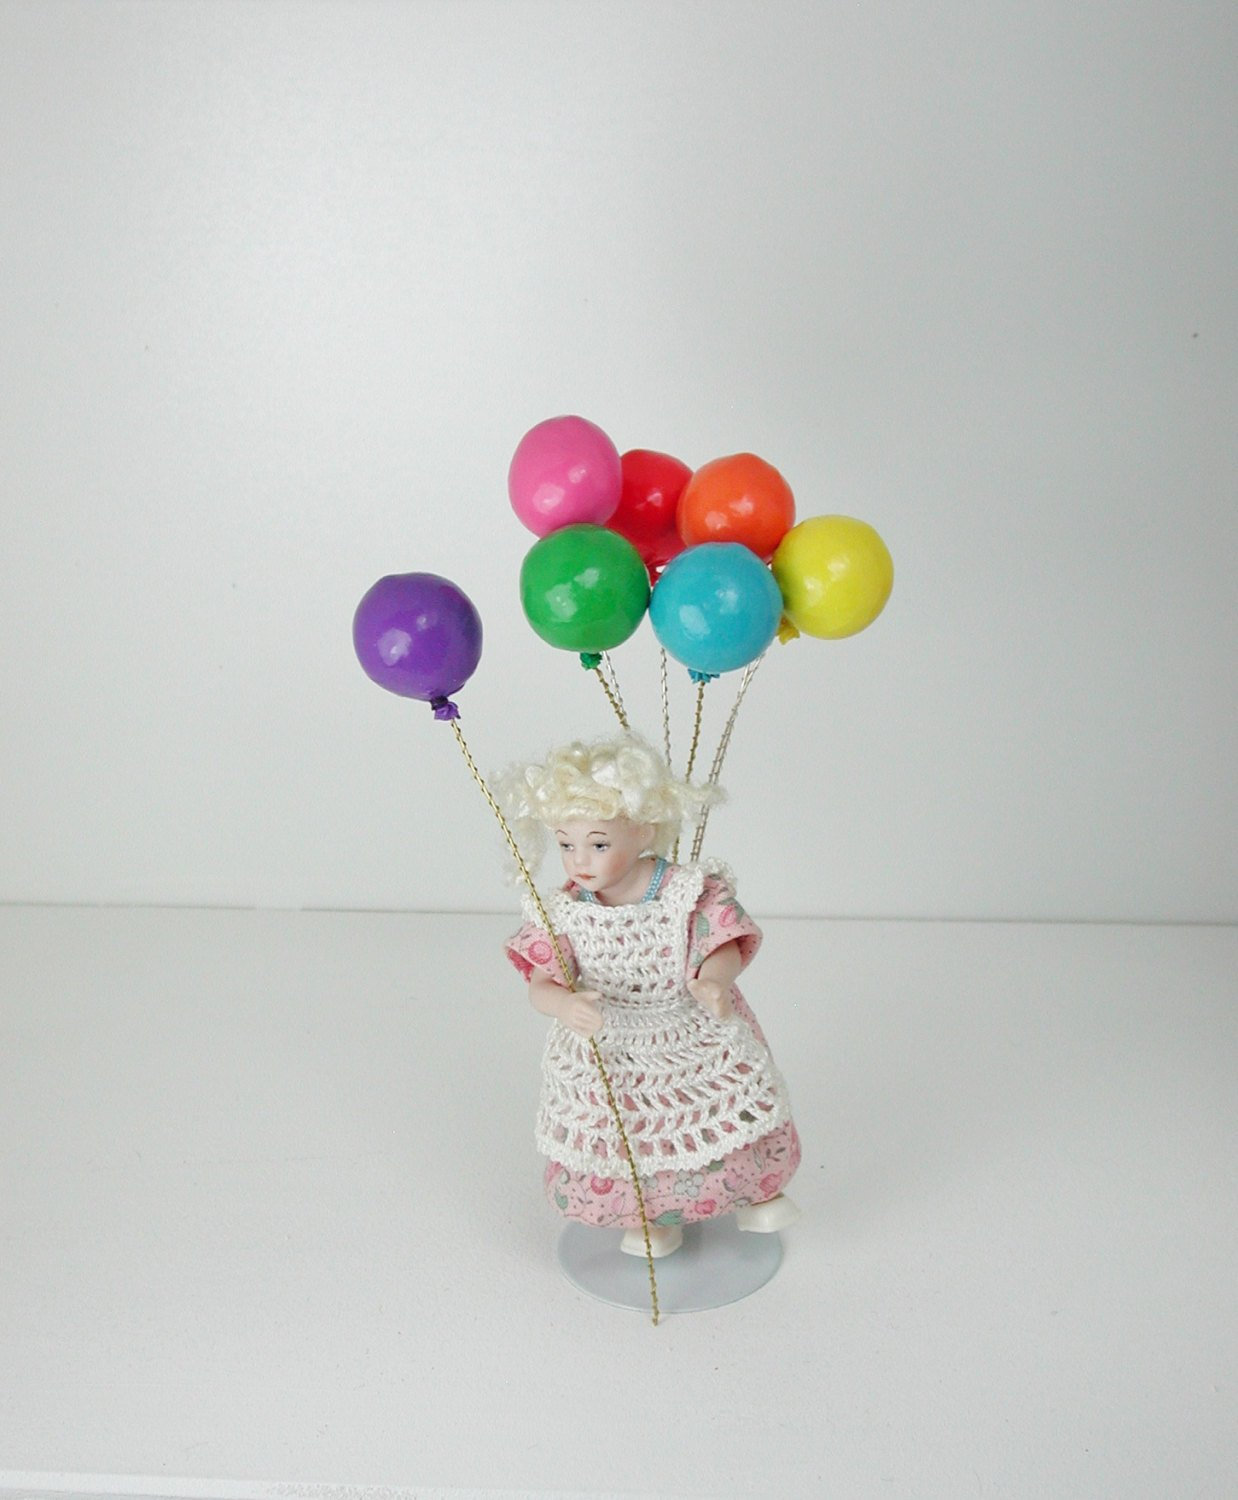 Luftballon in 1:12, Spielzeug für das Puppenhaus Kind. 8